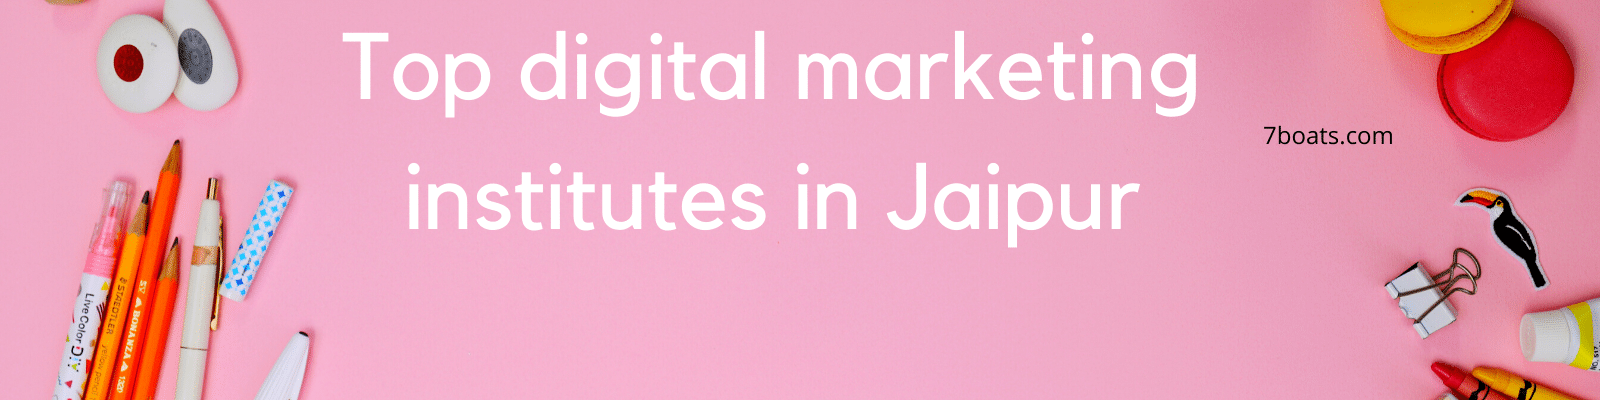 Top Digital Marketing Training Institutes in Jaipur – Best Digital Marketing Courses in Jaipur, Rajasthan